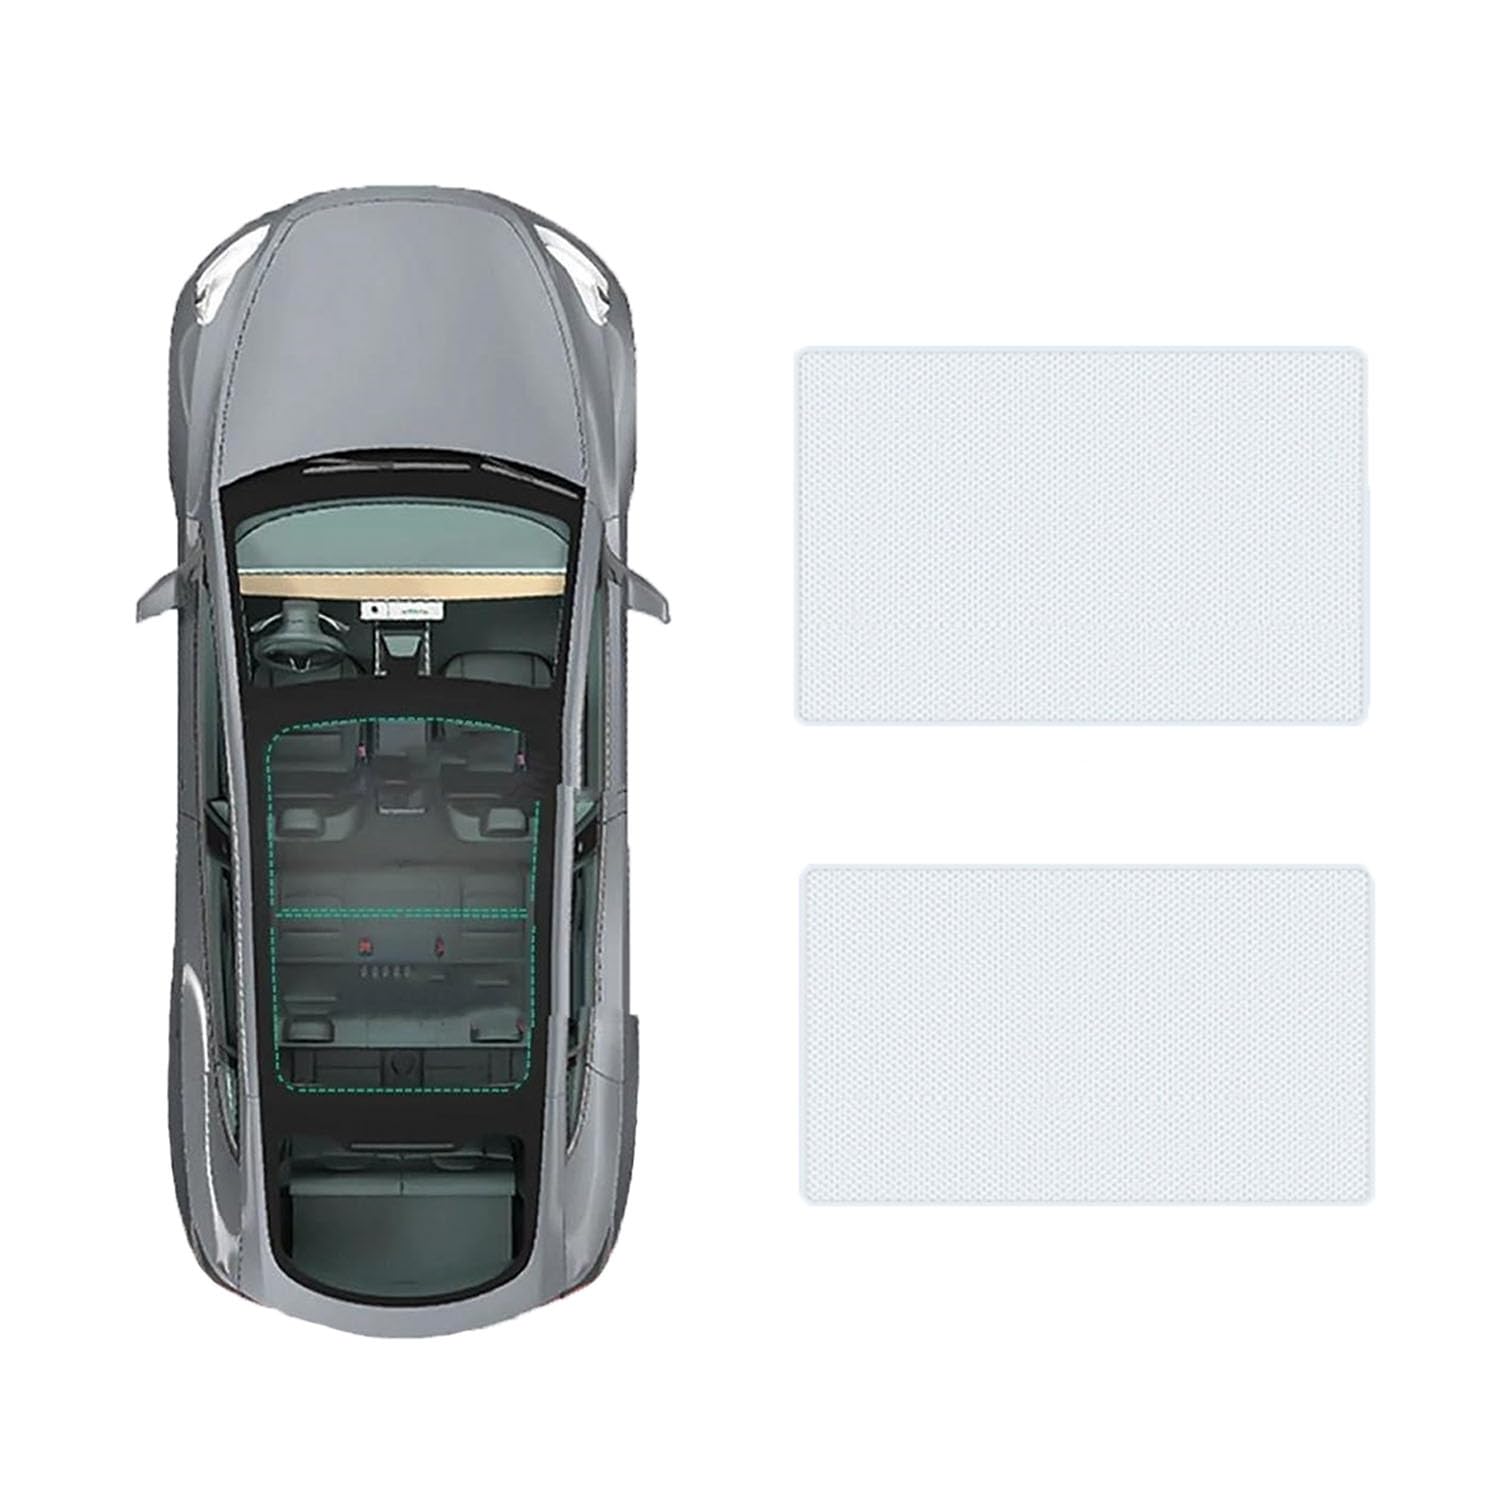 Auto Schiebedach Sonnenschirm Vorhang Für BMW 2 Series 4 doors 2020-,UV-Schutz Schattierung vorne Heckscheibe Sonnenschutz,A-Gray white regular Style von JiAQen